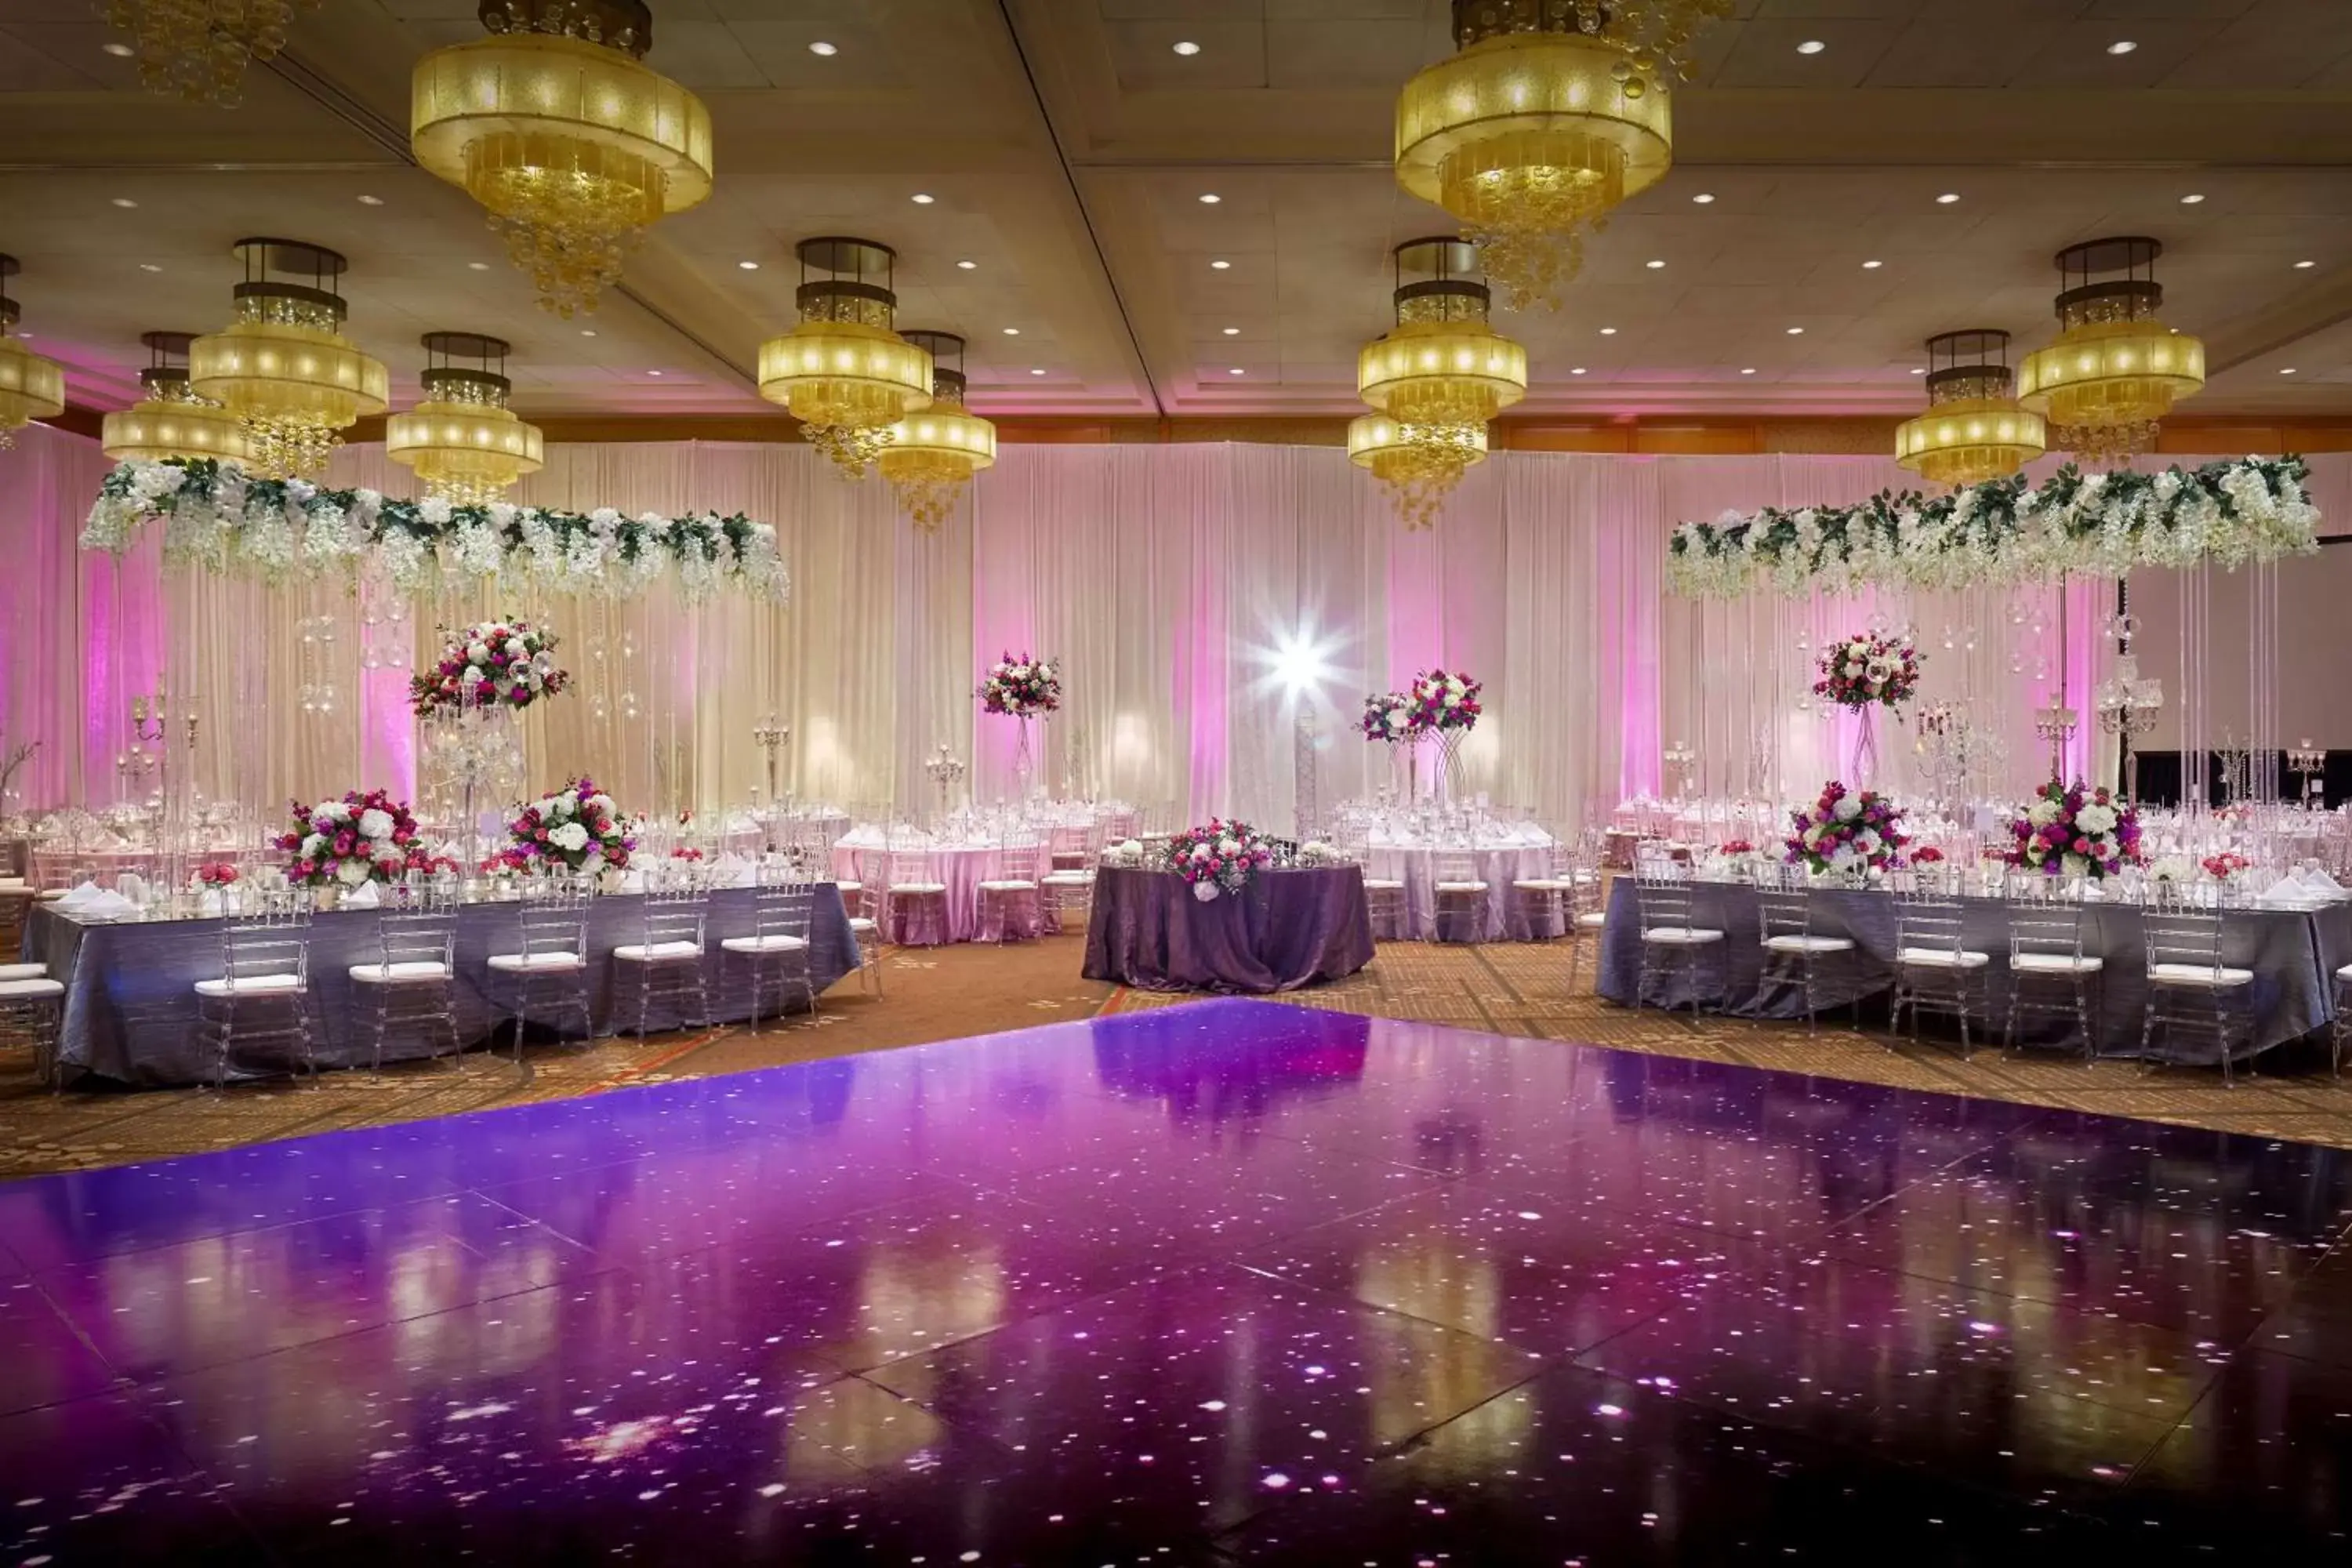 Lobby or reception, Banquet Facilities in Hyatt Regency Bellevue